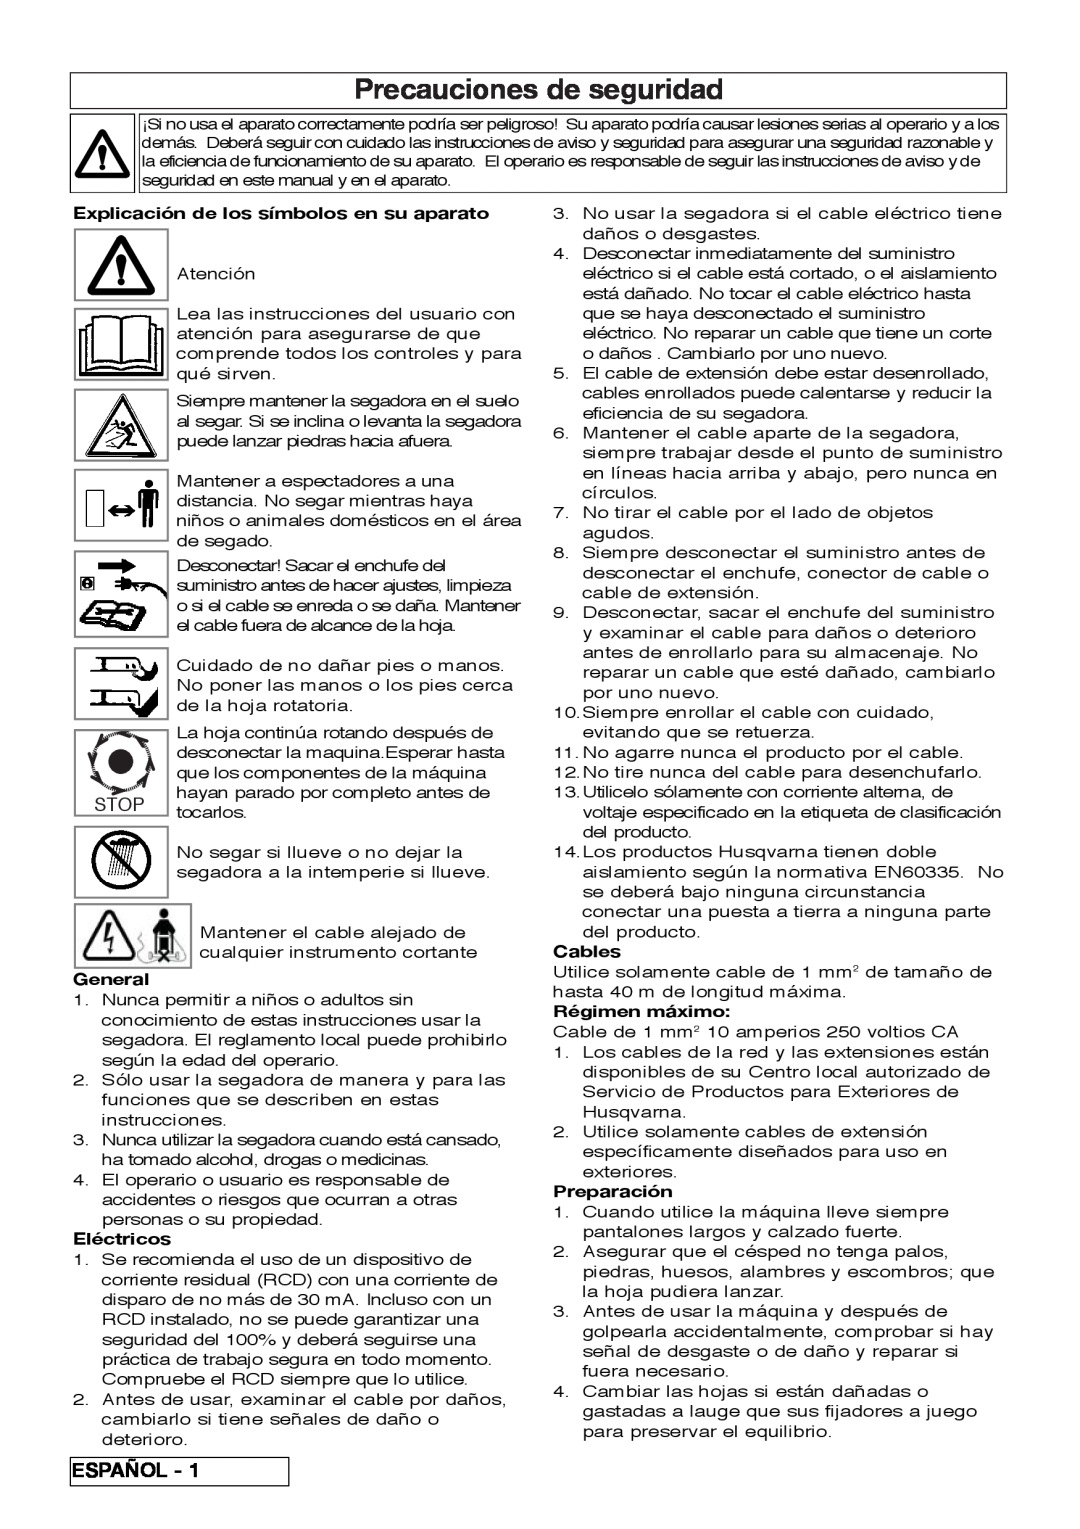 Flymo VM032 manual Precauciones de seguridad, Español, Stop, Explicación de los símbolos en su aparato, General, Eléctricos 